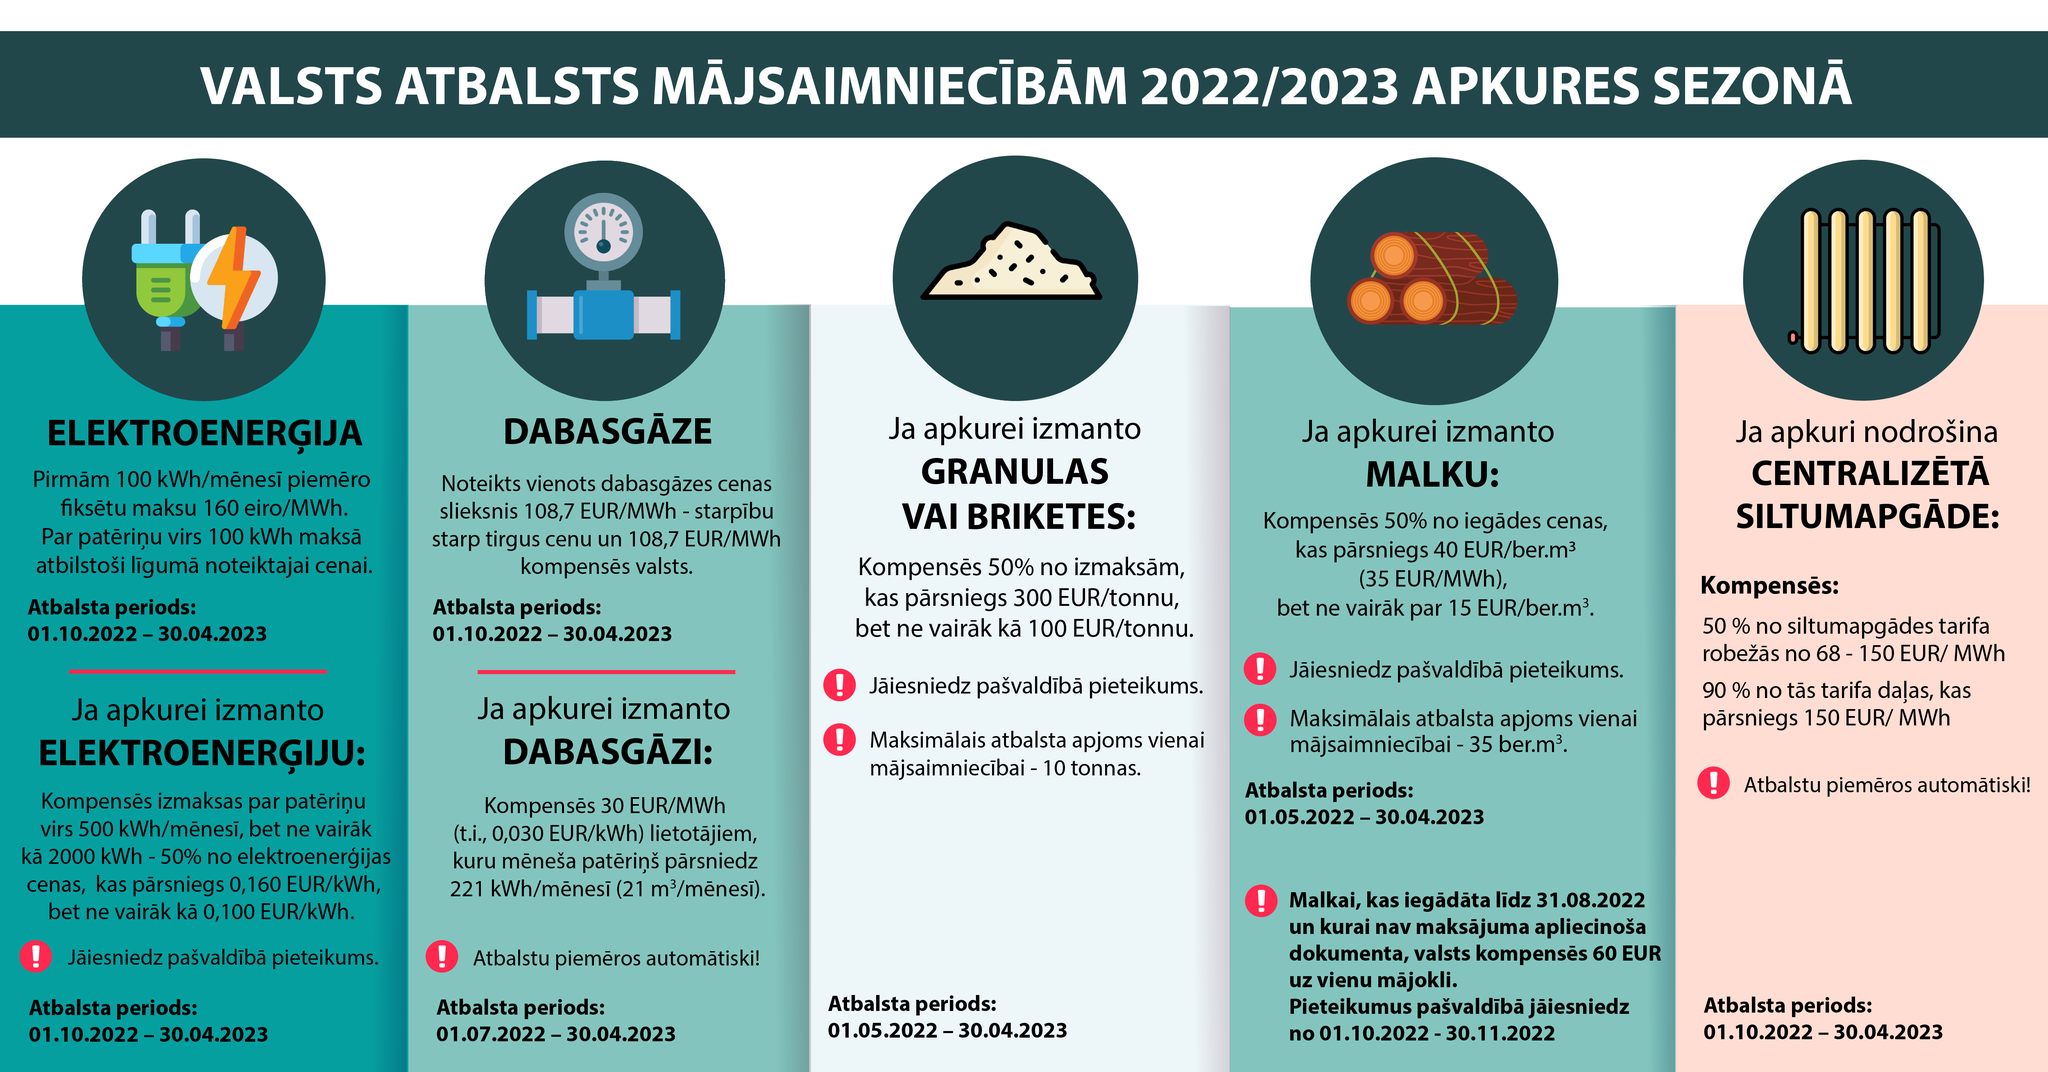 Valsts atbalsts 2022/2023 apkures sezonā